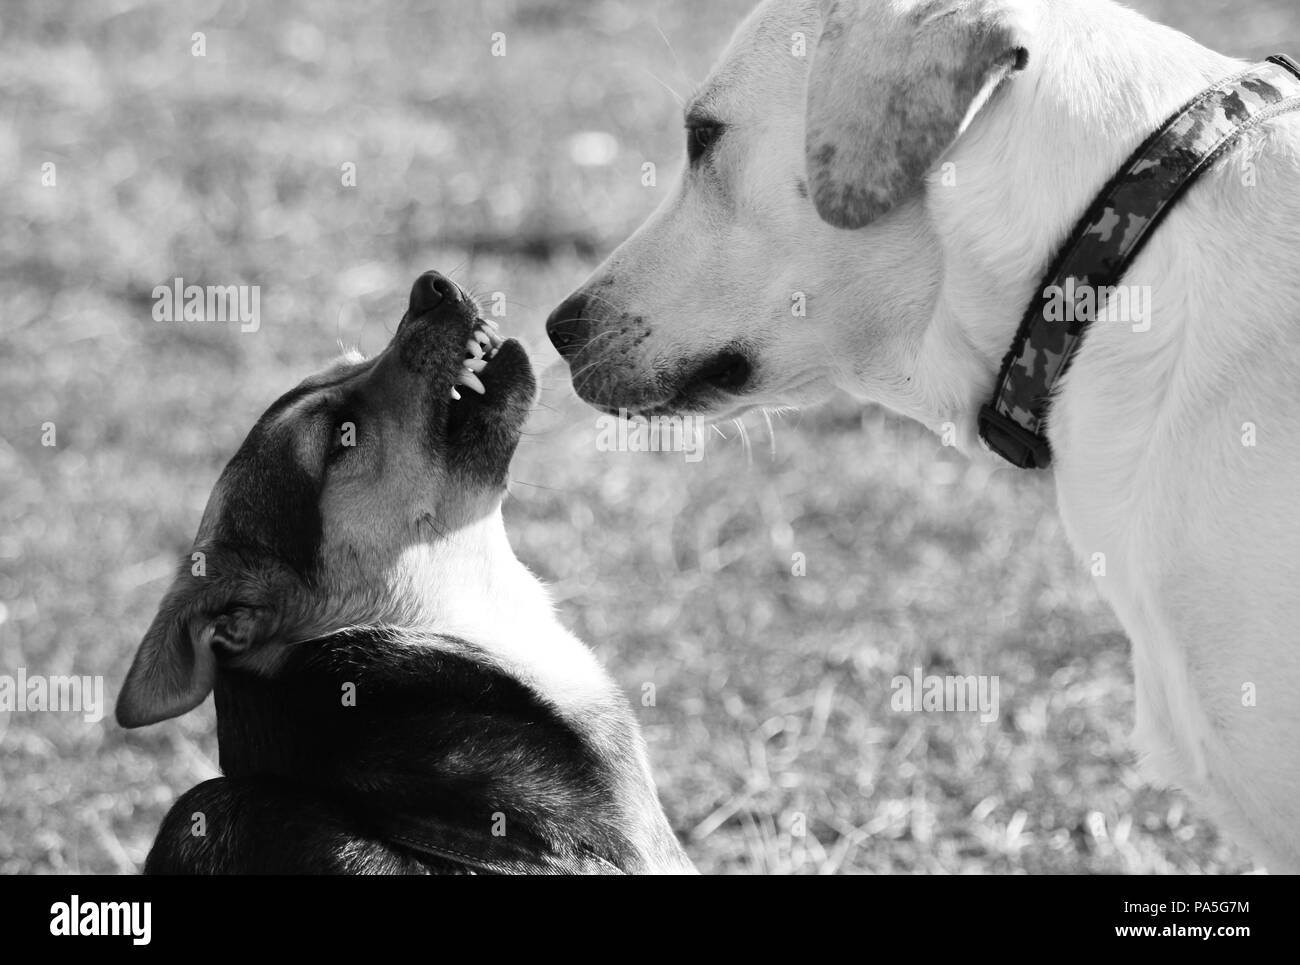 Un piccolo cane ringhia con rabbia e diffidenza verso un labrador che sembra tranquillo. Foto Stock